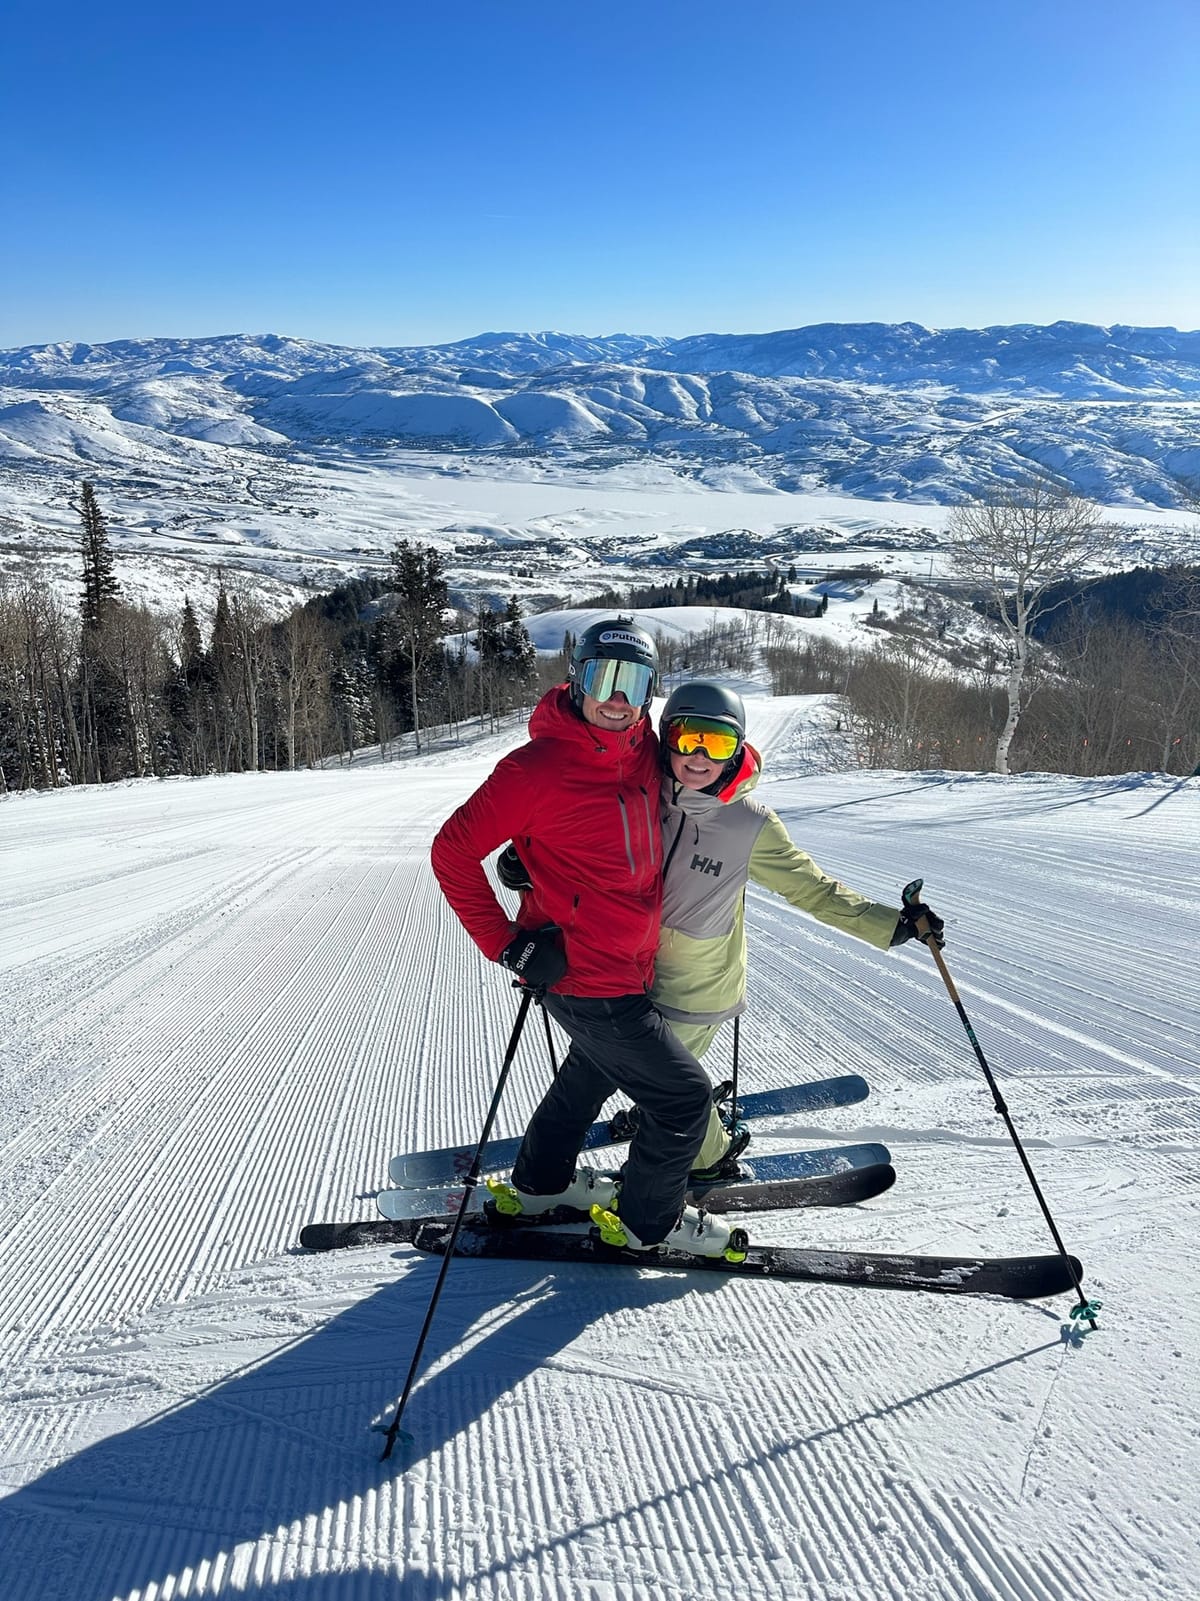 US Ski Areas Post Highest Ever Skier Numbers In 22-23 Season